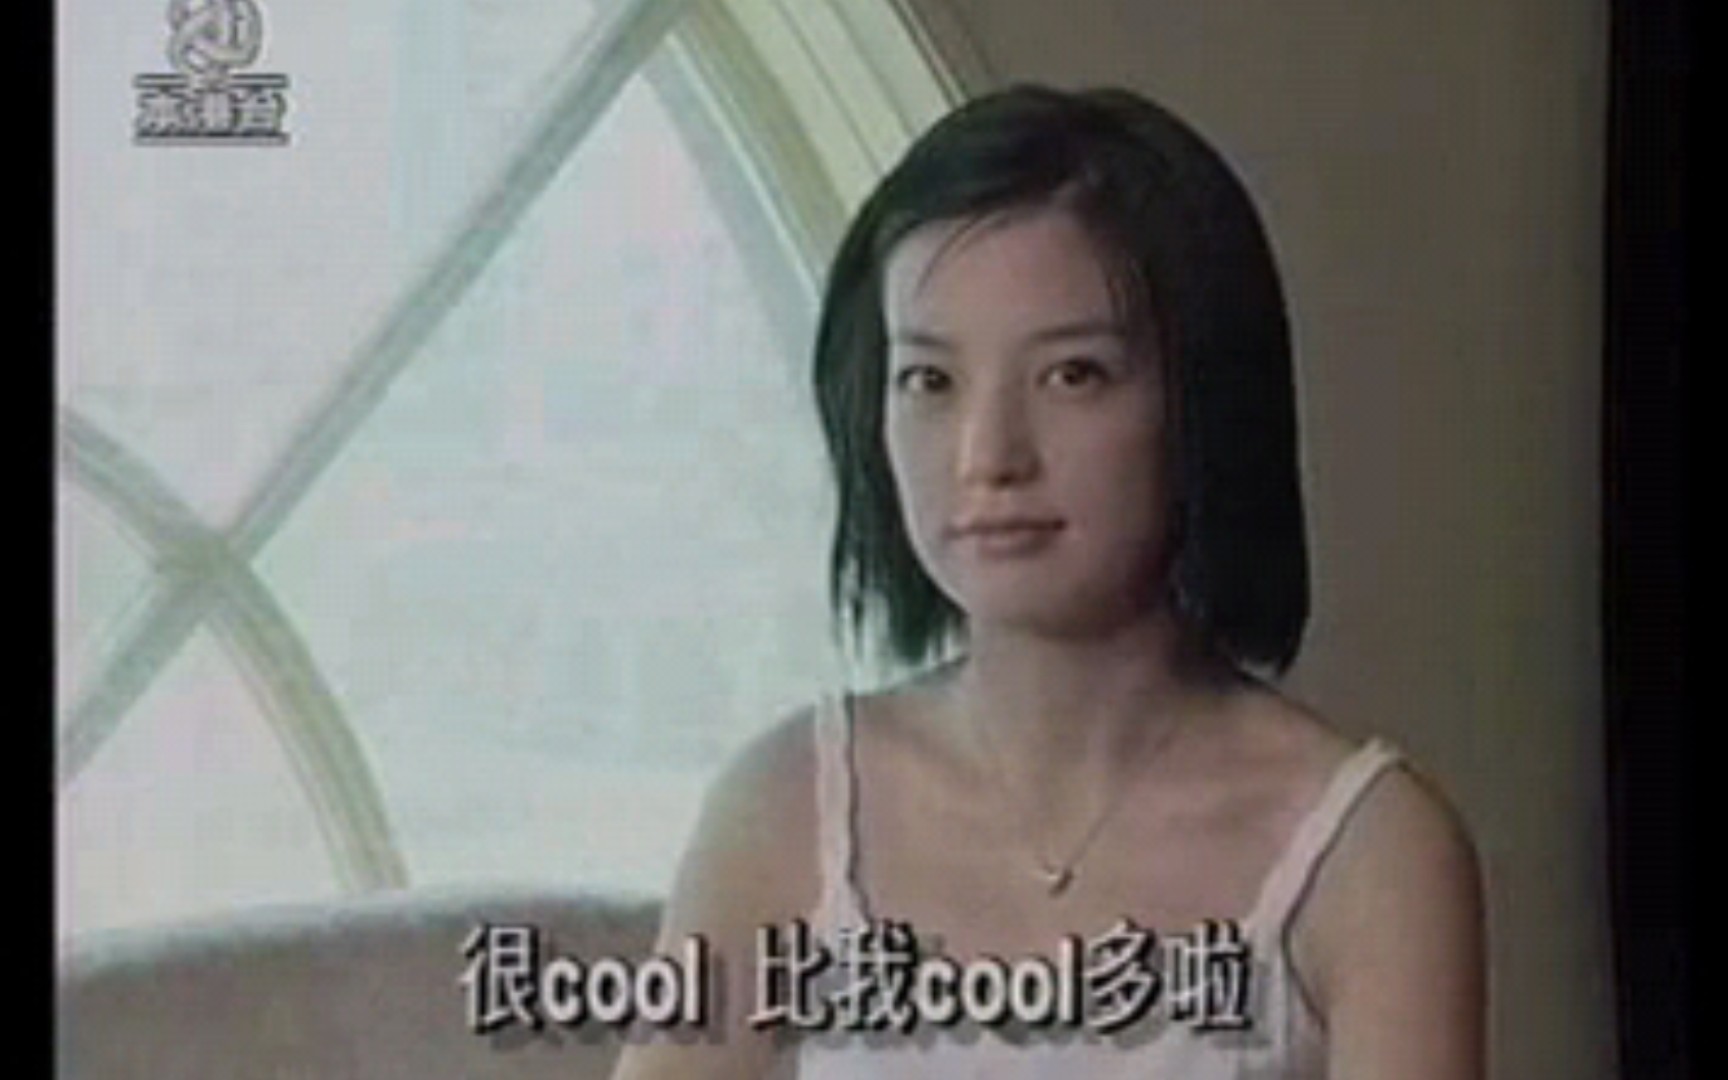 赵薇2000做客香港央视宣传电视剧《侠女闯天关》特辑:讲述拍摄电视剧